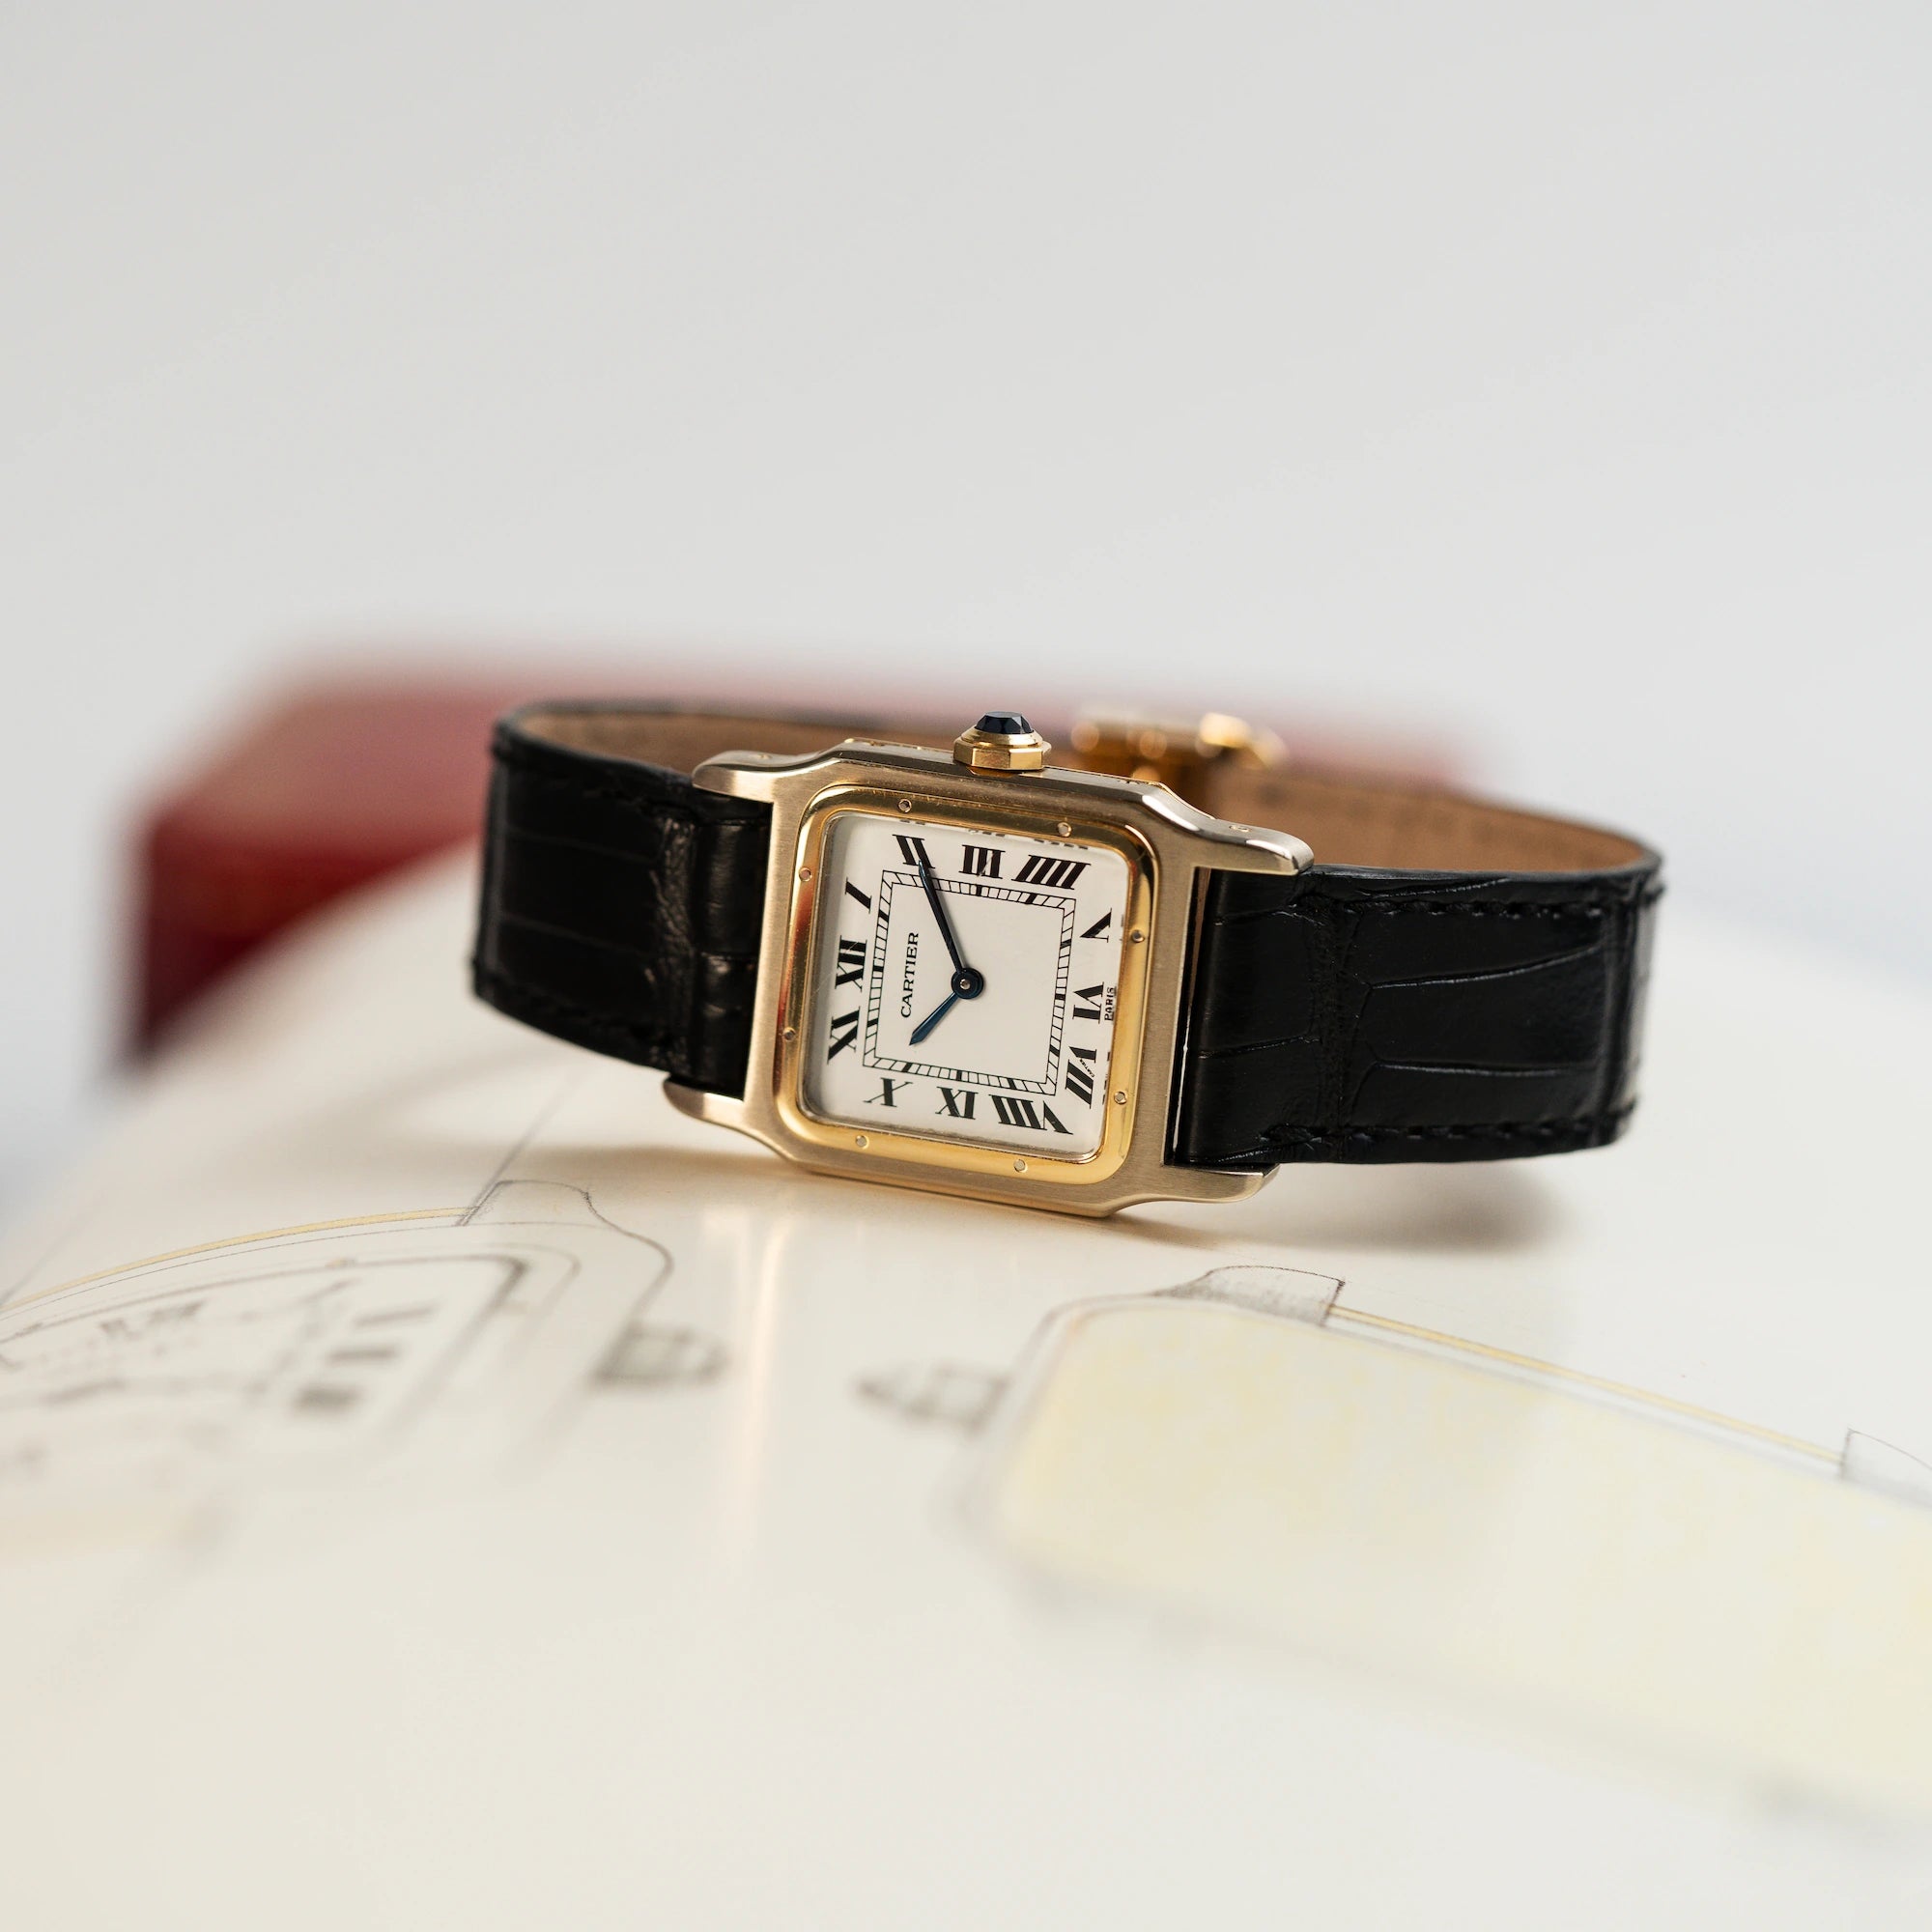 Produktfotografie einer liegenden Cartier Santos Dumont "Deux Ors" mit Paris weißem Dial